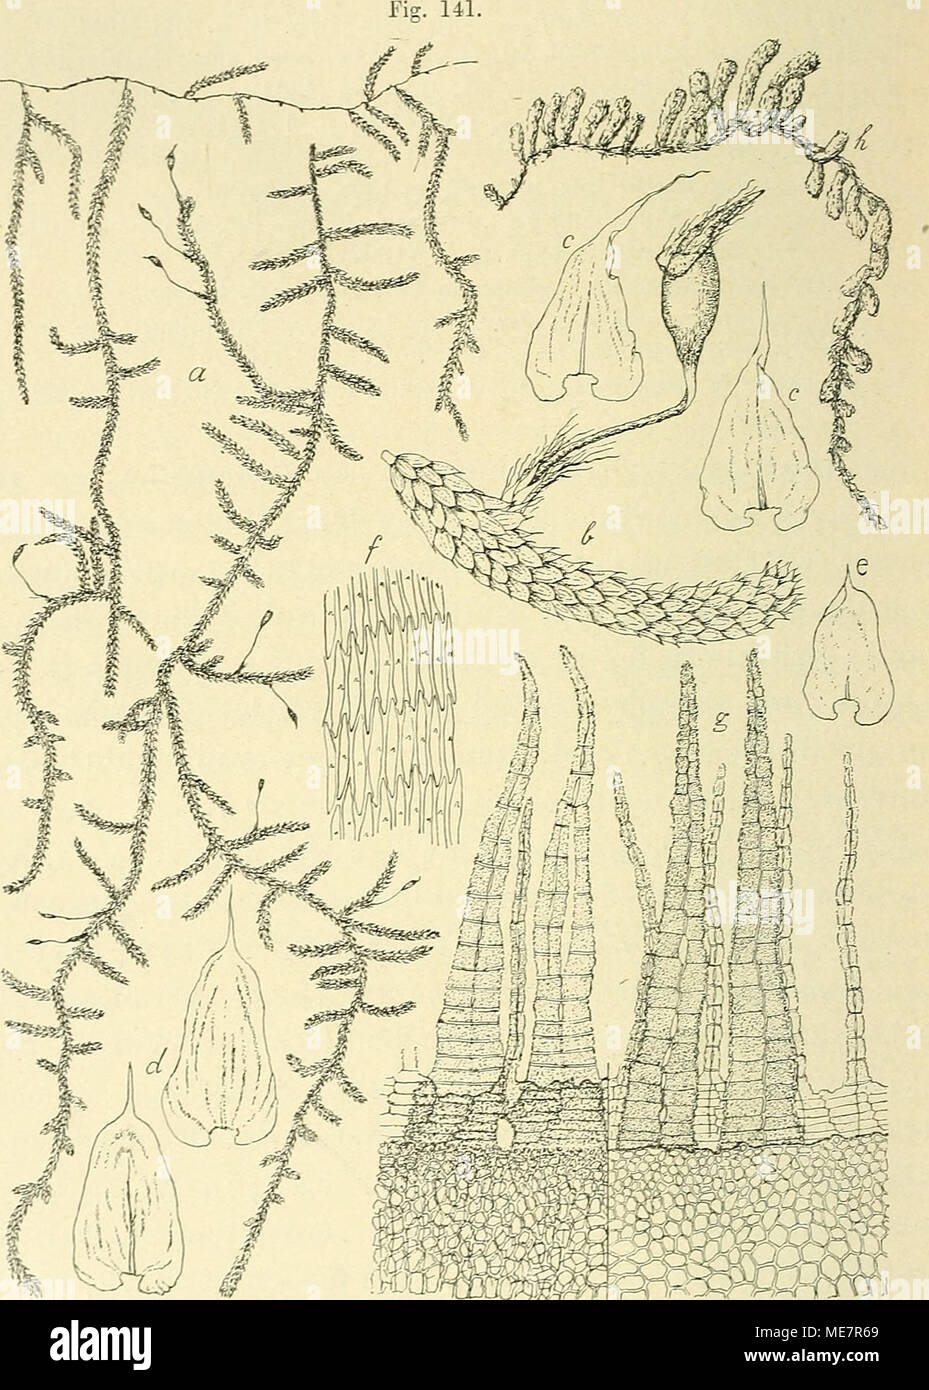 . Die Musci der Flora von Buitenzorg : zugleich Laubmoosflora von Java . Meieuriiim Miquellanum (C. MüLL.). a. Habitusbild (DatüiL Giüsse). e. Fiederblatt. y . b. Fiederast mit Sporogon J. c. Stengelblätter '/• d. Astblätter V- f. BlattzcUen -7-. r/. Peristom dorsal und ventral gesehen ^—. h. Habitusbild eines Stengelstückcs der var. repens Flsch. (natürl. Grösse). Basis und herzförmigem, geflügeltem Grunde rasch in eine lange, Stock Photo